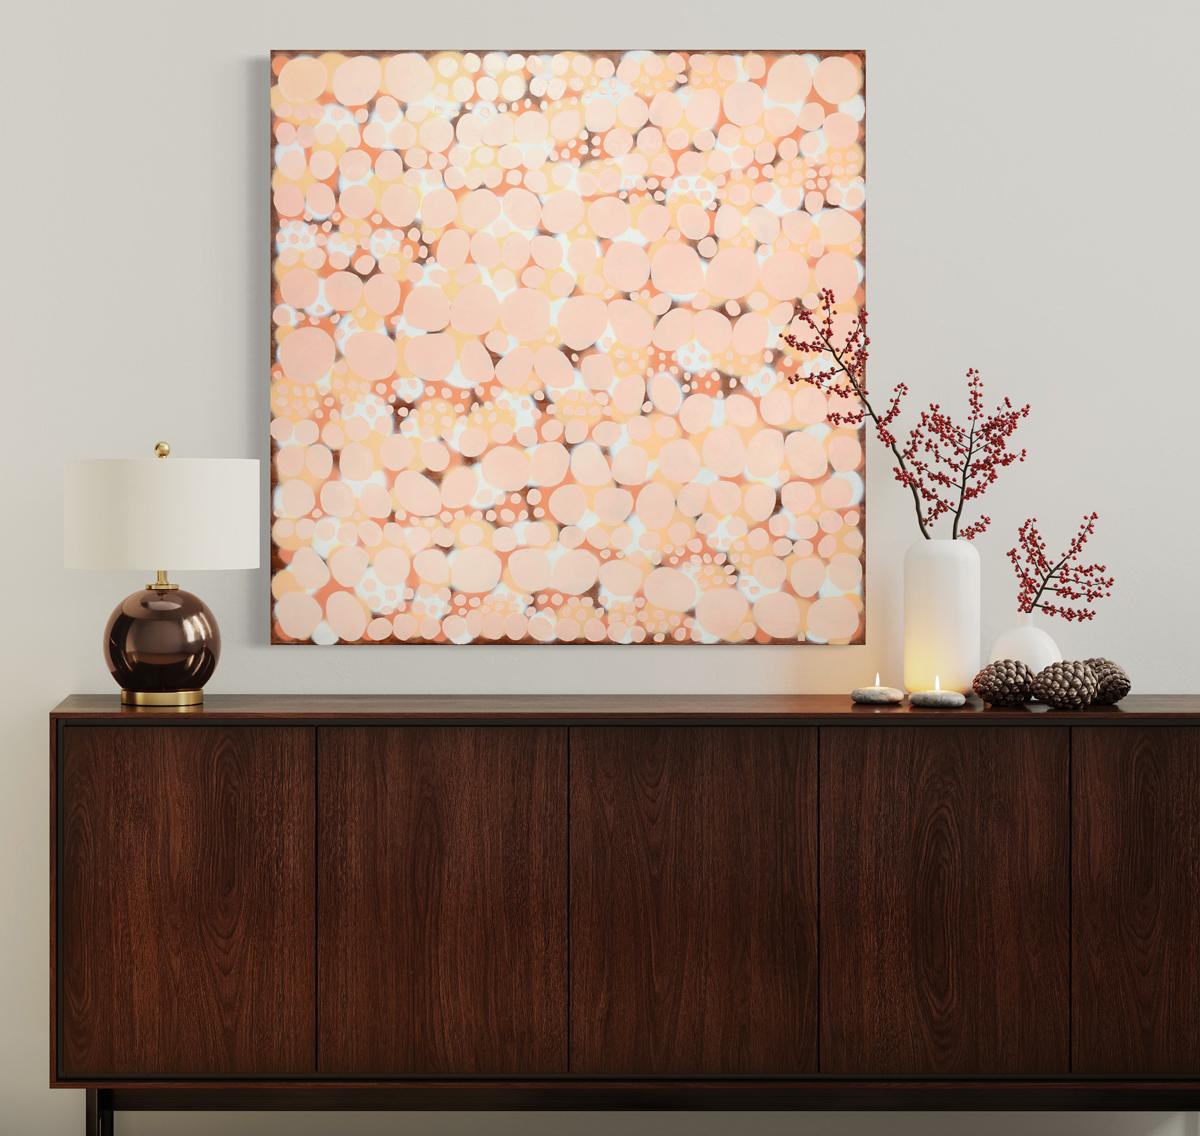 Cette peinture abstraite de Sofie Swann présente une palette chaude, superposant des formes circulaires dans les tons rouge et orange pour créer une composition abstraite avec de la profondeur. Les côtés de la toile enveloppée dans une galerie sont